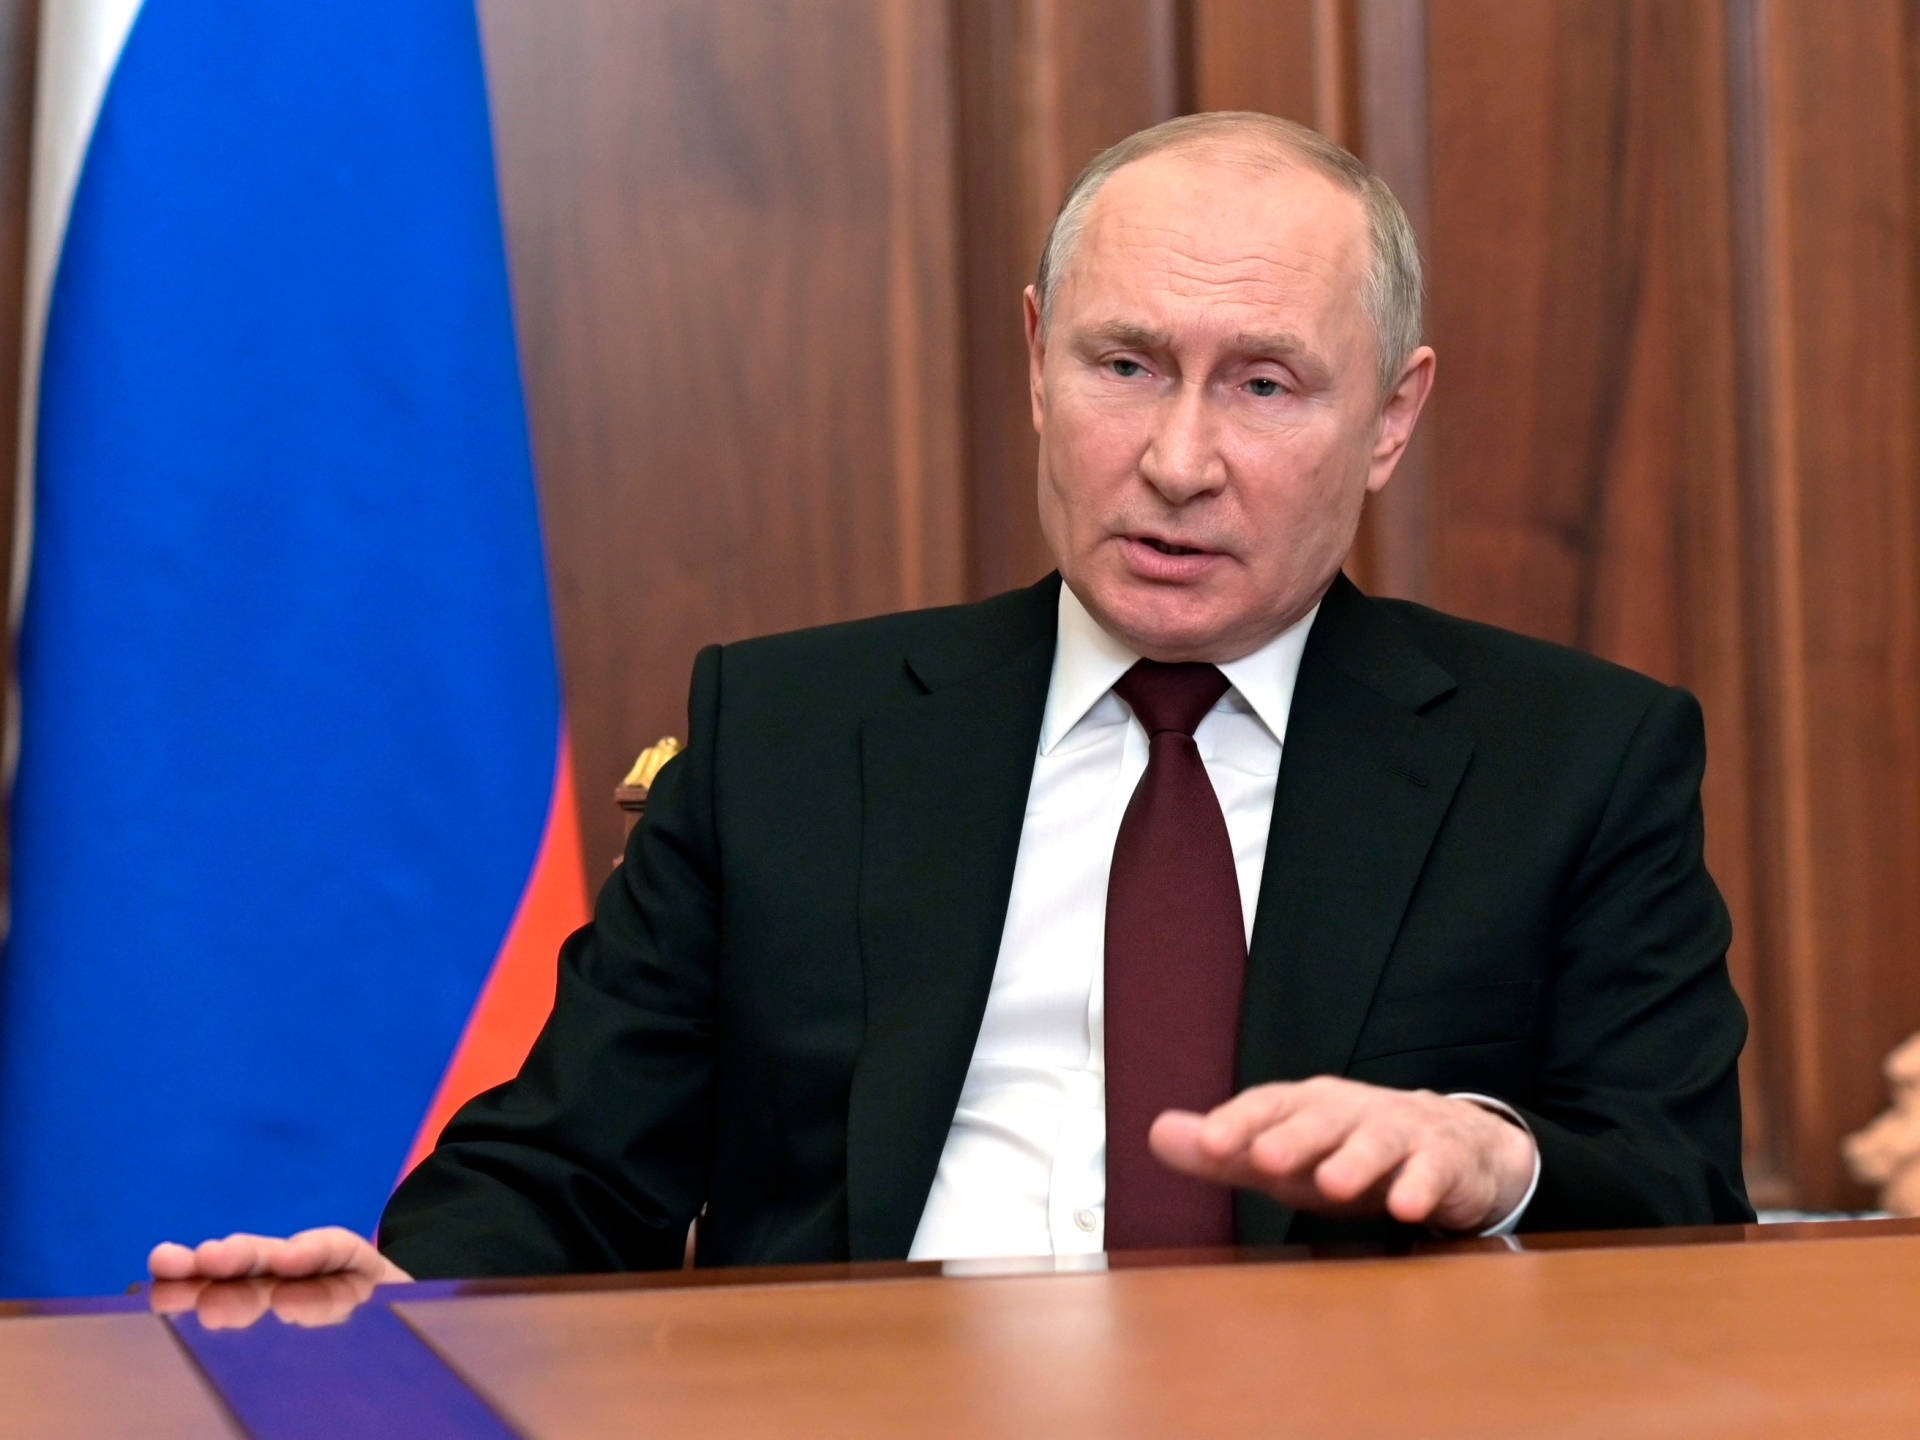 Vladimir Putin Speaking At Conference Table Wallpaper